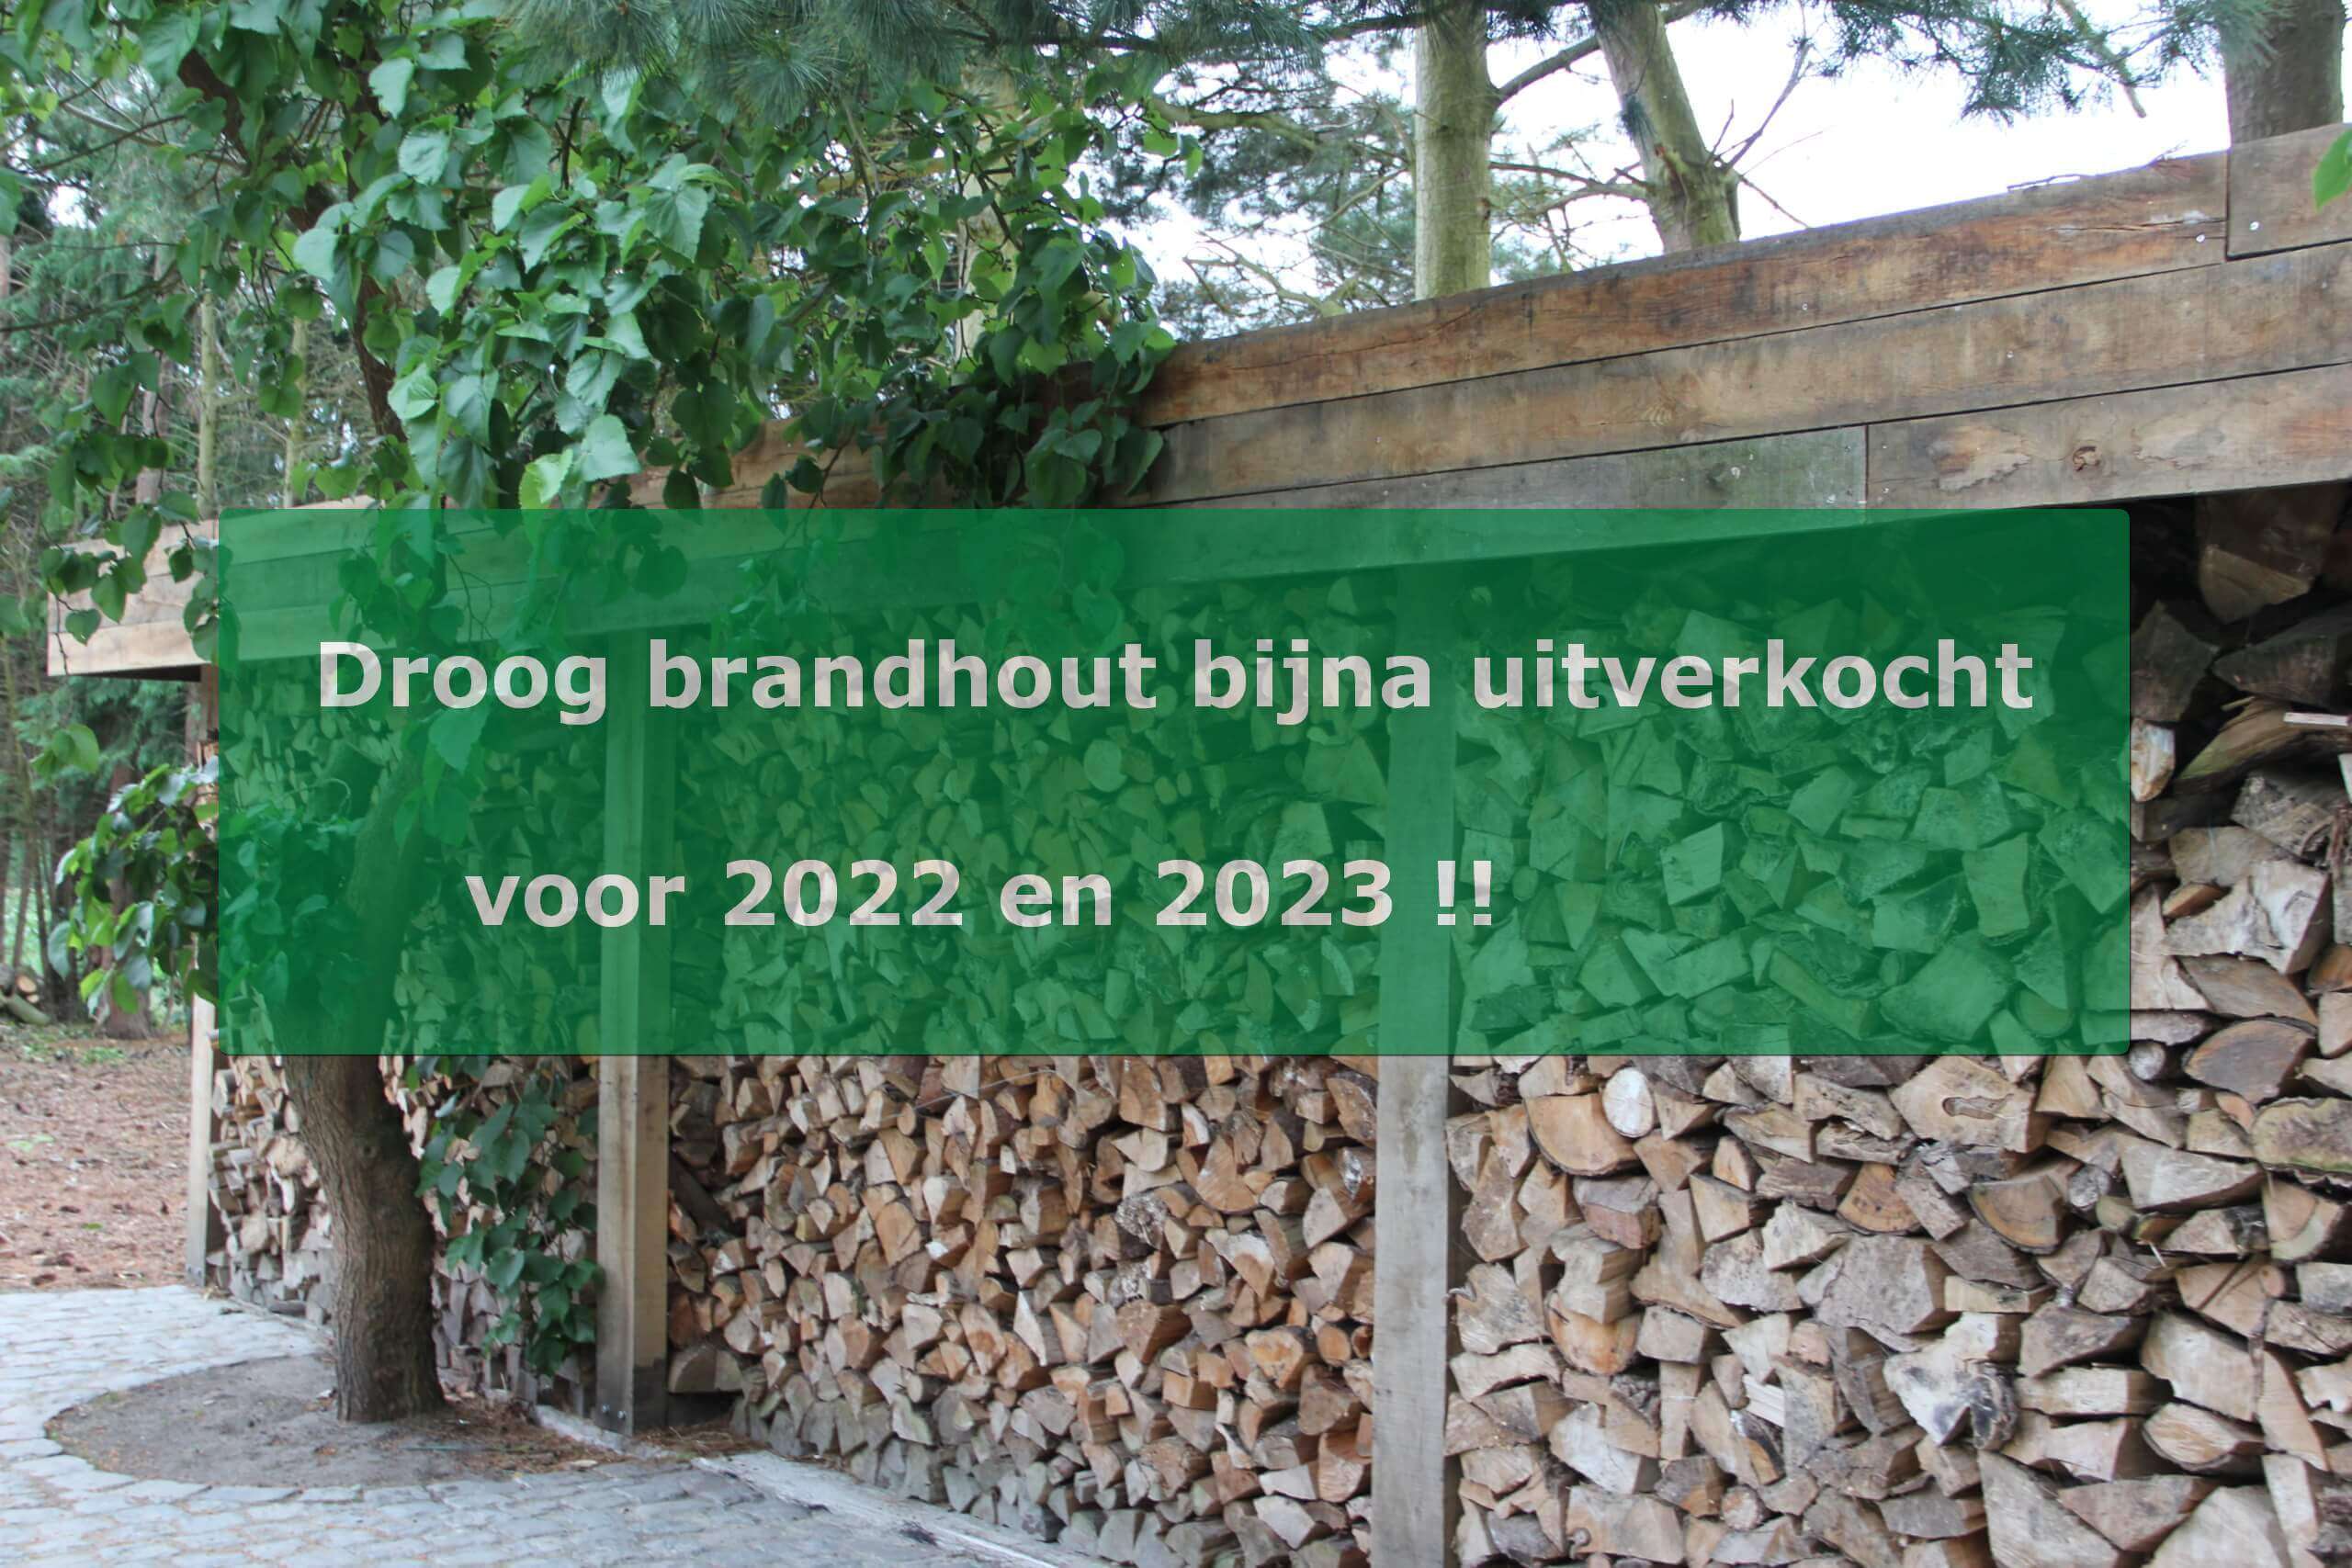 Winkelier helder Atletisch Brandhout kopen? Kies duurzaam hout.